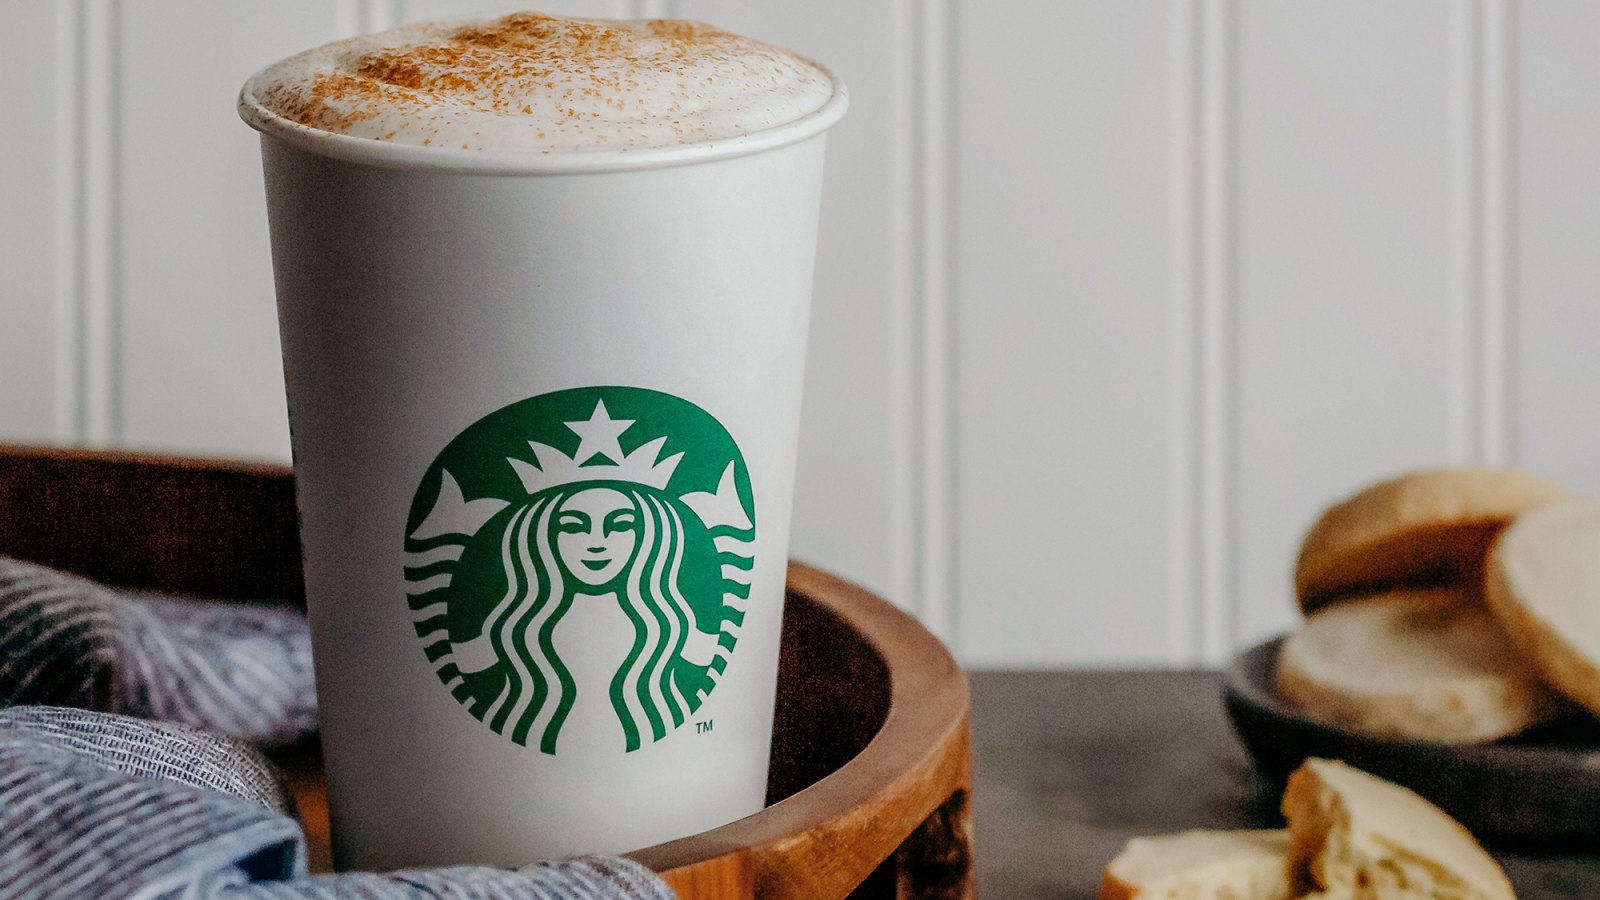 Starbucks Cinnamon Shortbread Latte